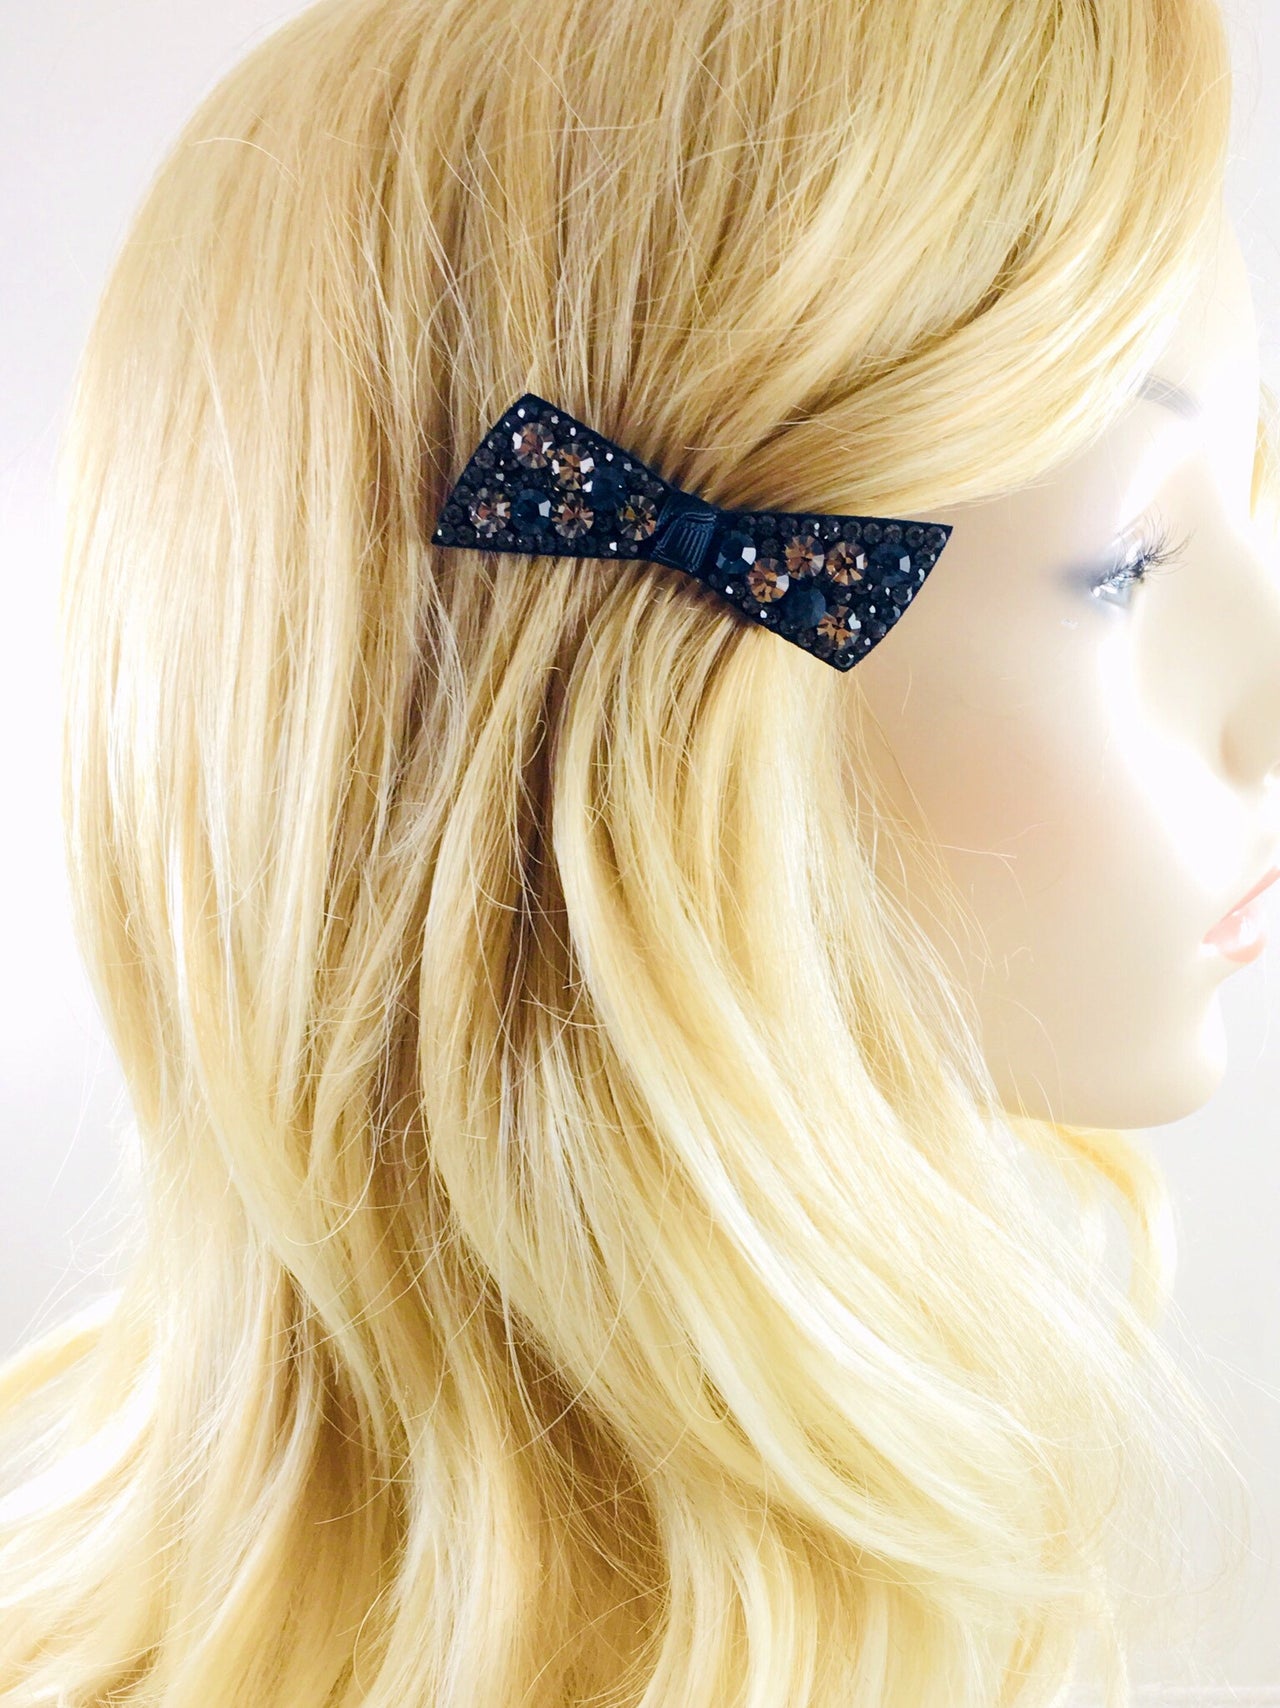 Urban Bow Knot Hair Clip Swarovski Crystal Clamp Acrylic black base Gray Navy Blue, Hair Clip - MOGHANT